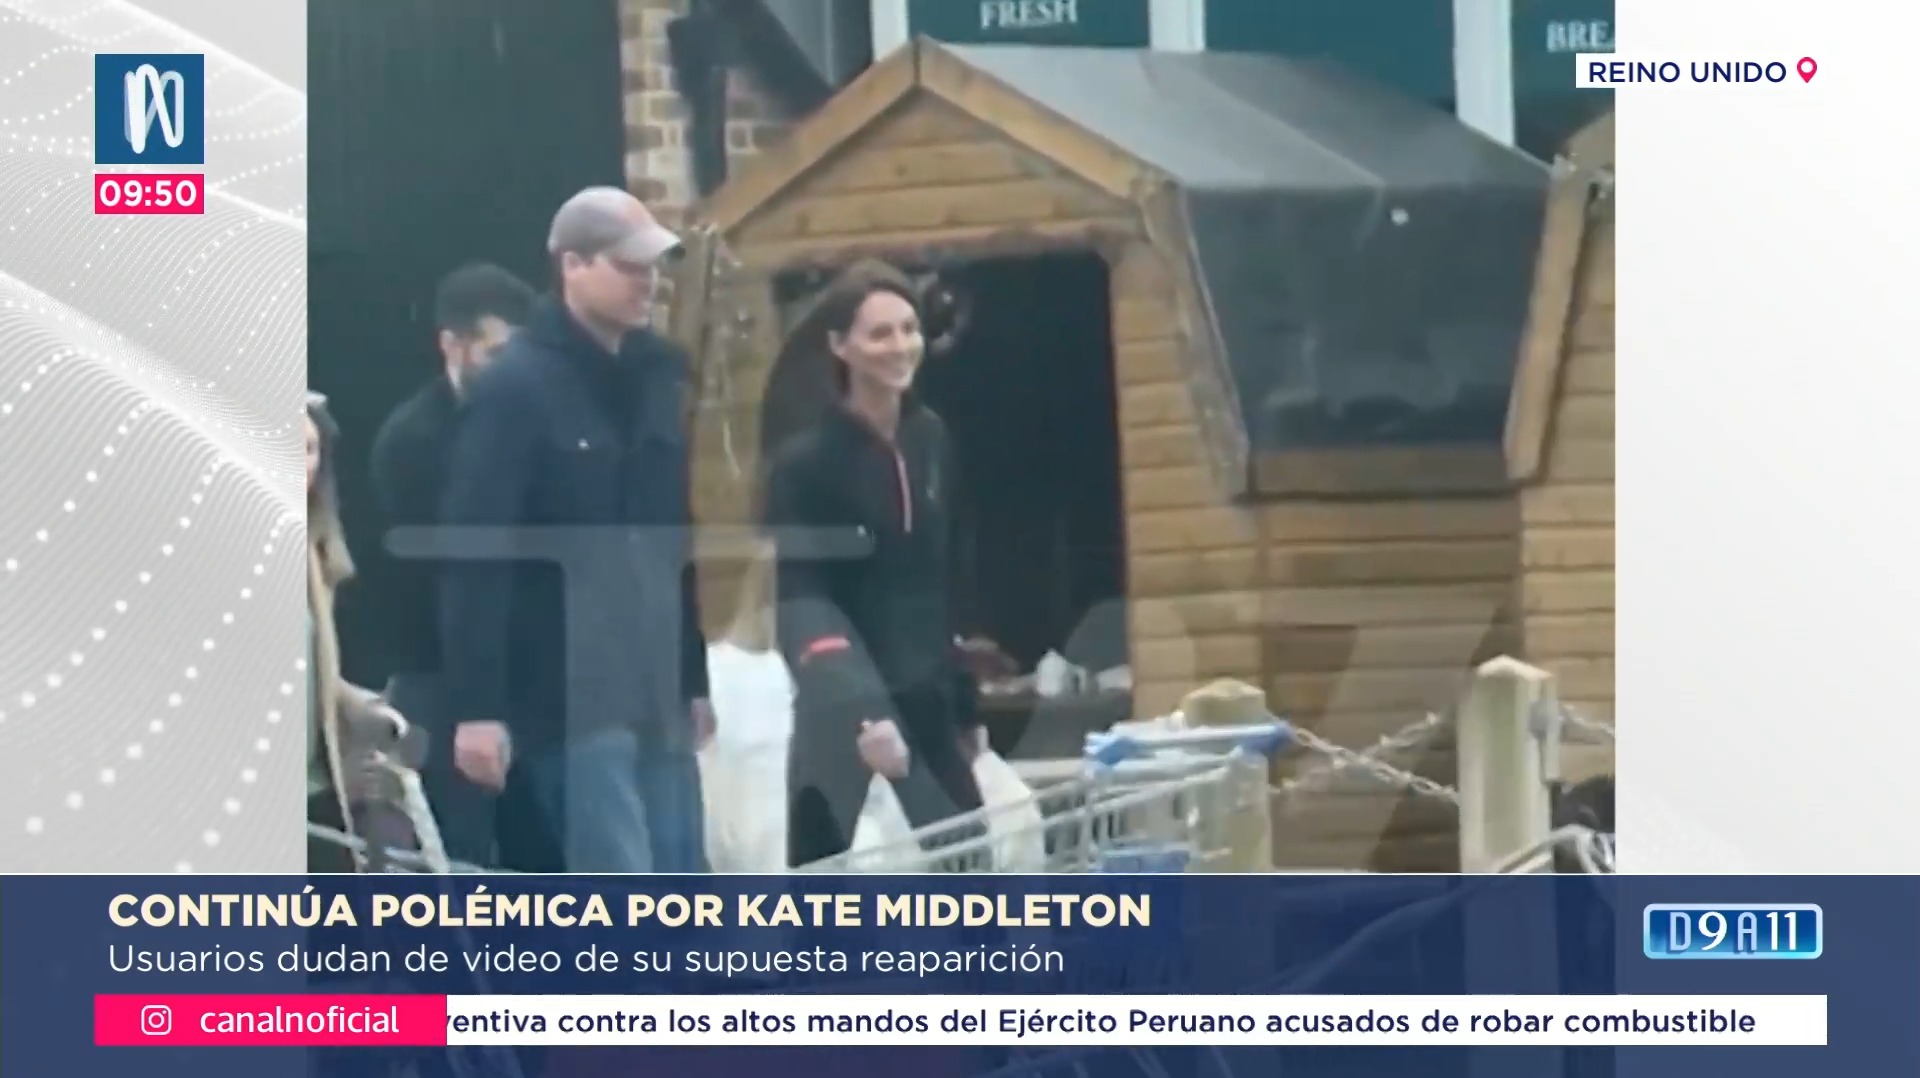 La reaparición de Kate Middleton sigue generando polémica en redes sociales / TMZ